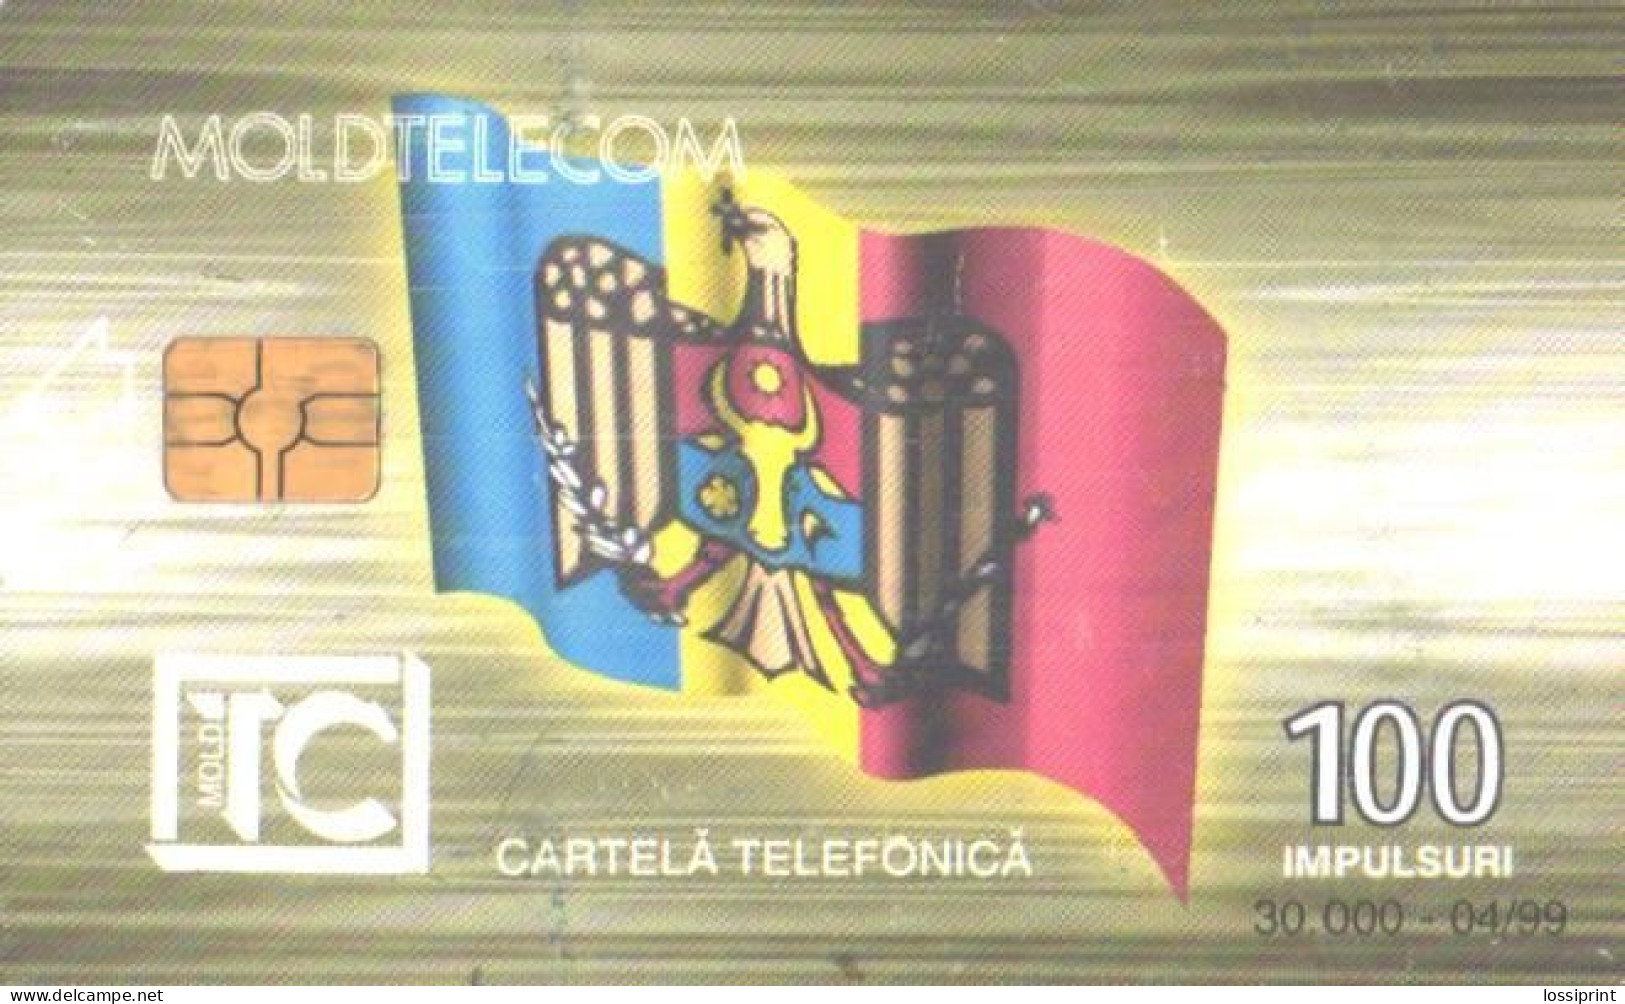 Moldova:Used Phonecard, Moldtelecom, 100 Impulses, Triumph Arch, 1999 - Moldawien (Moldau)